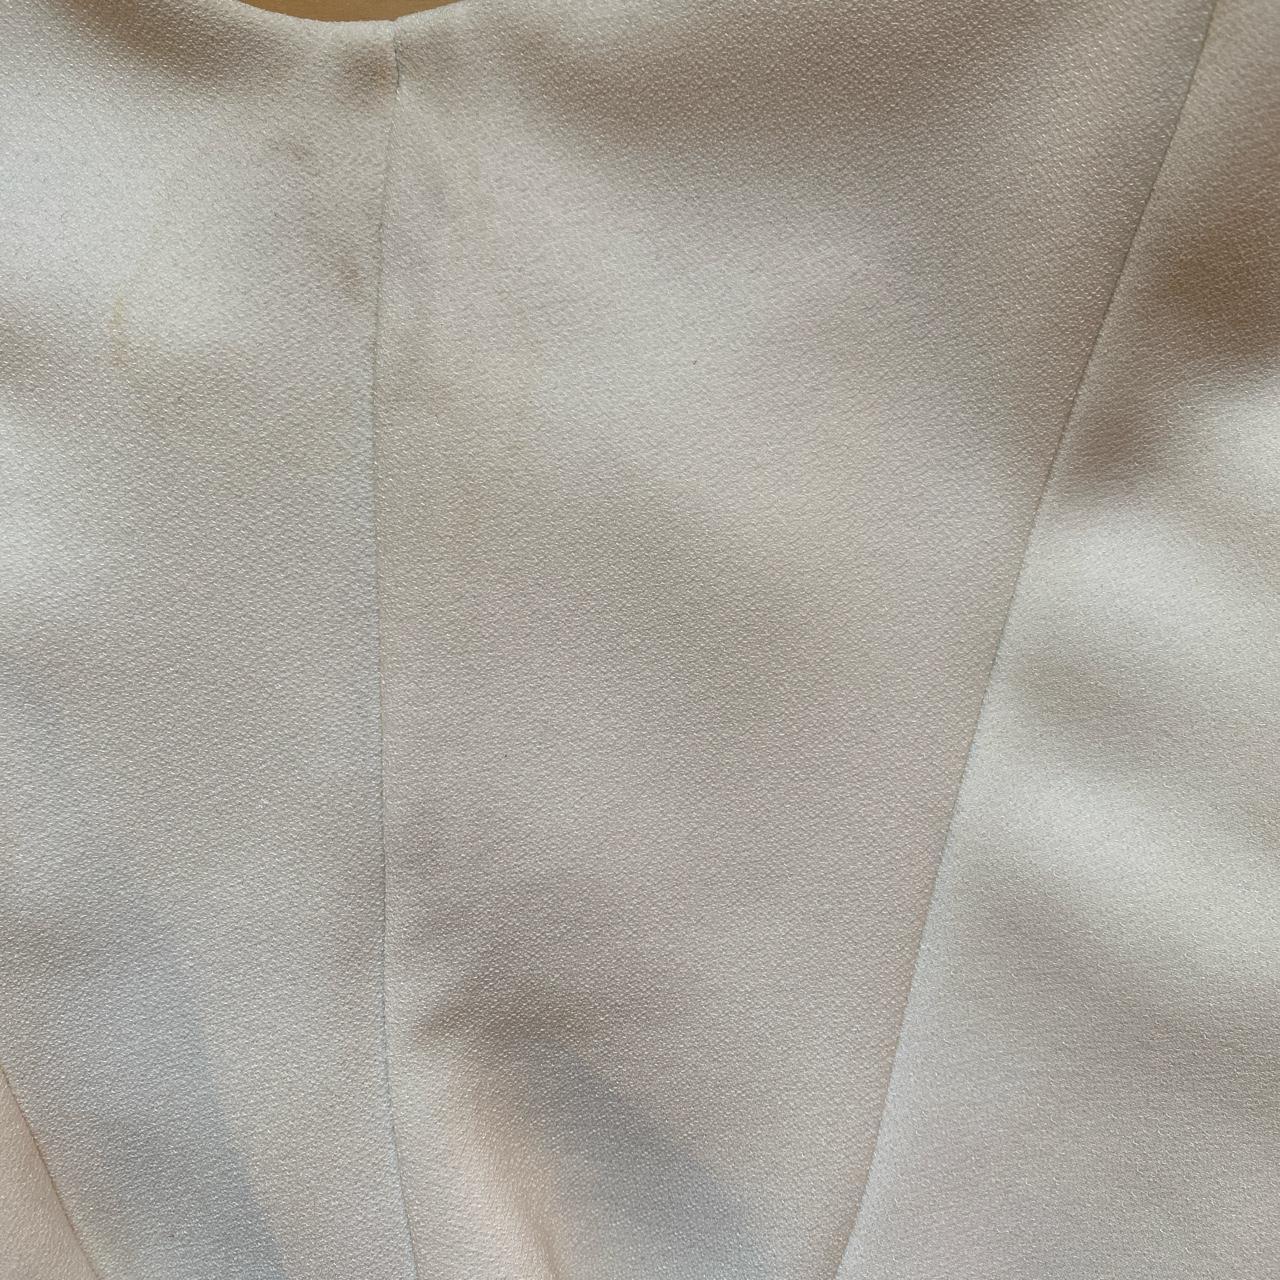 Bec & Bridge Women's White and Cream Dress (4)